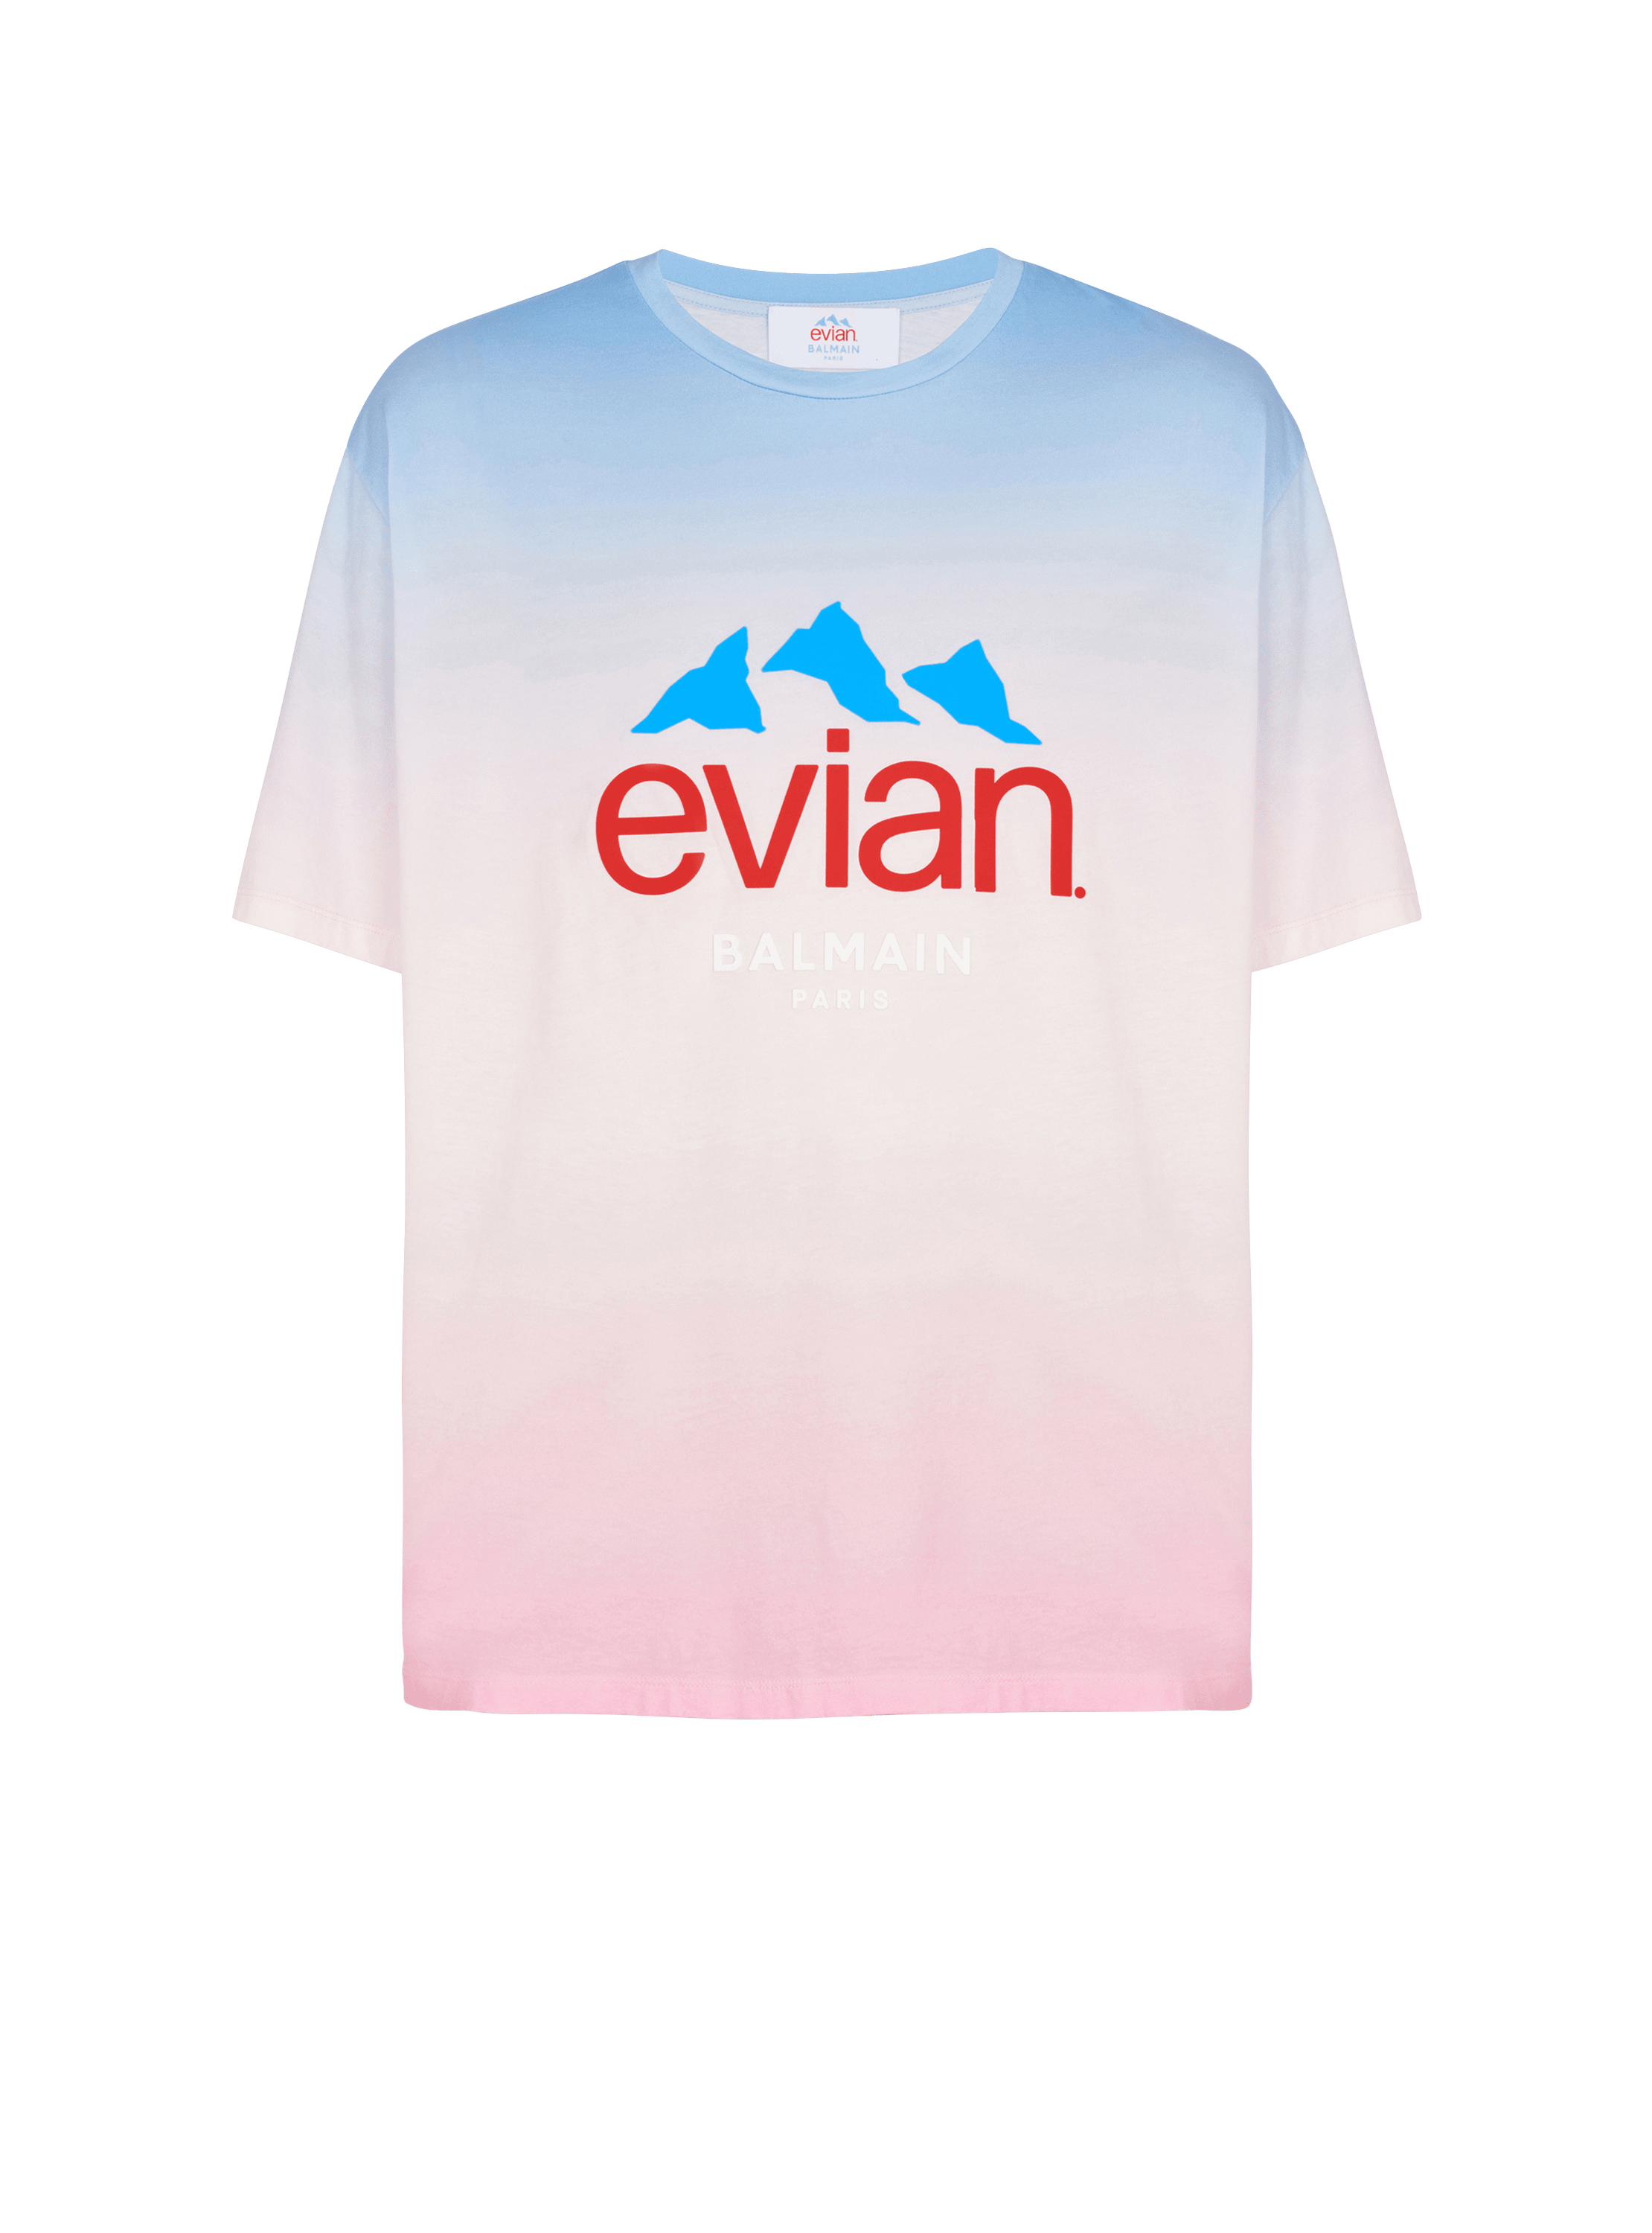 Balmain x Evian - Gradient T-shirt, multicolor, hi-res